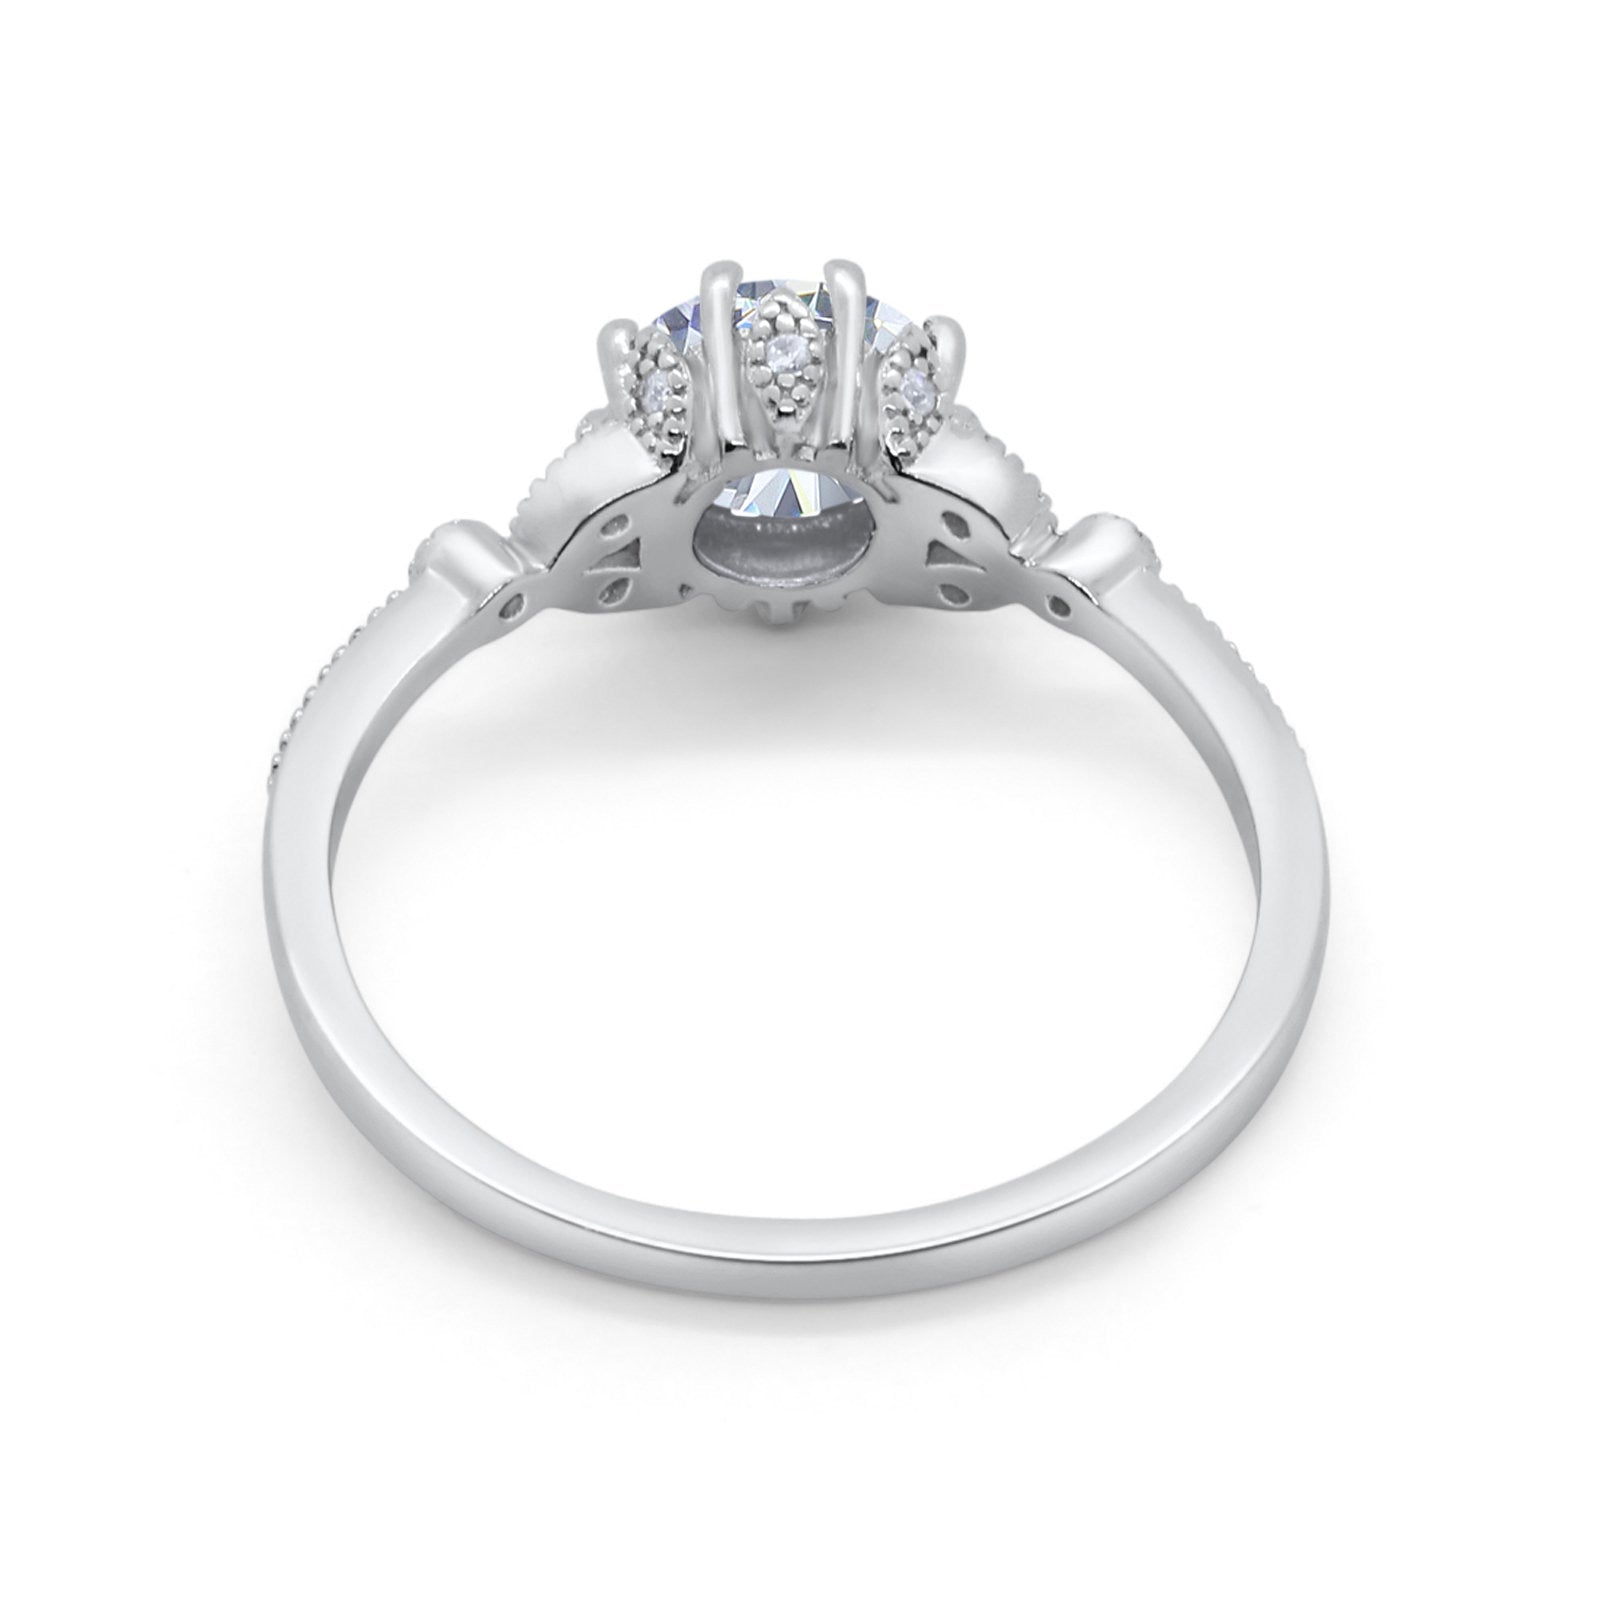 14K Gold Round Shape Art Deco Fashion Bridal Simulated Cubic Zirconia Wedding Engagement Ring